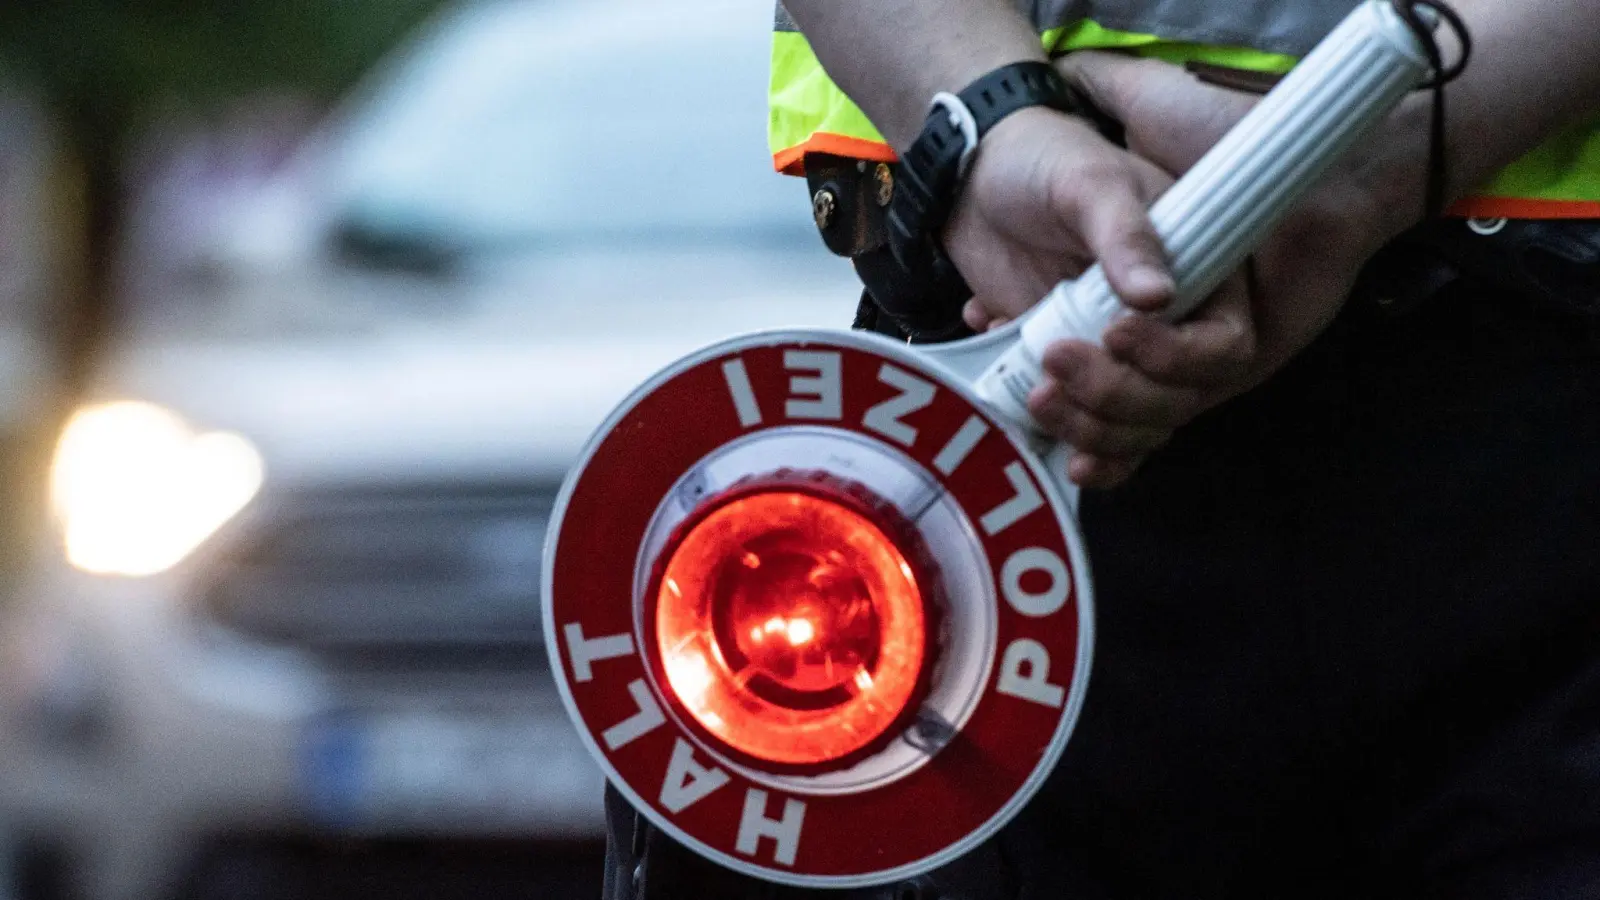 Über 100 Fahrzeuge hat die Polizei am Mittwoch in Weidenbach und Ansbach kontrolliert.  (Symbolbild: Paul Zinken/dpa)